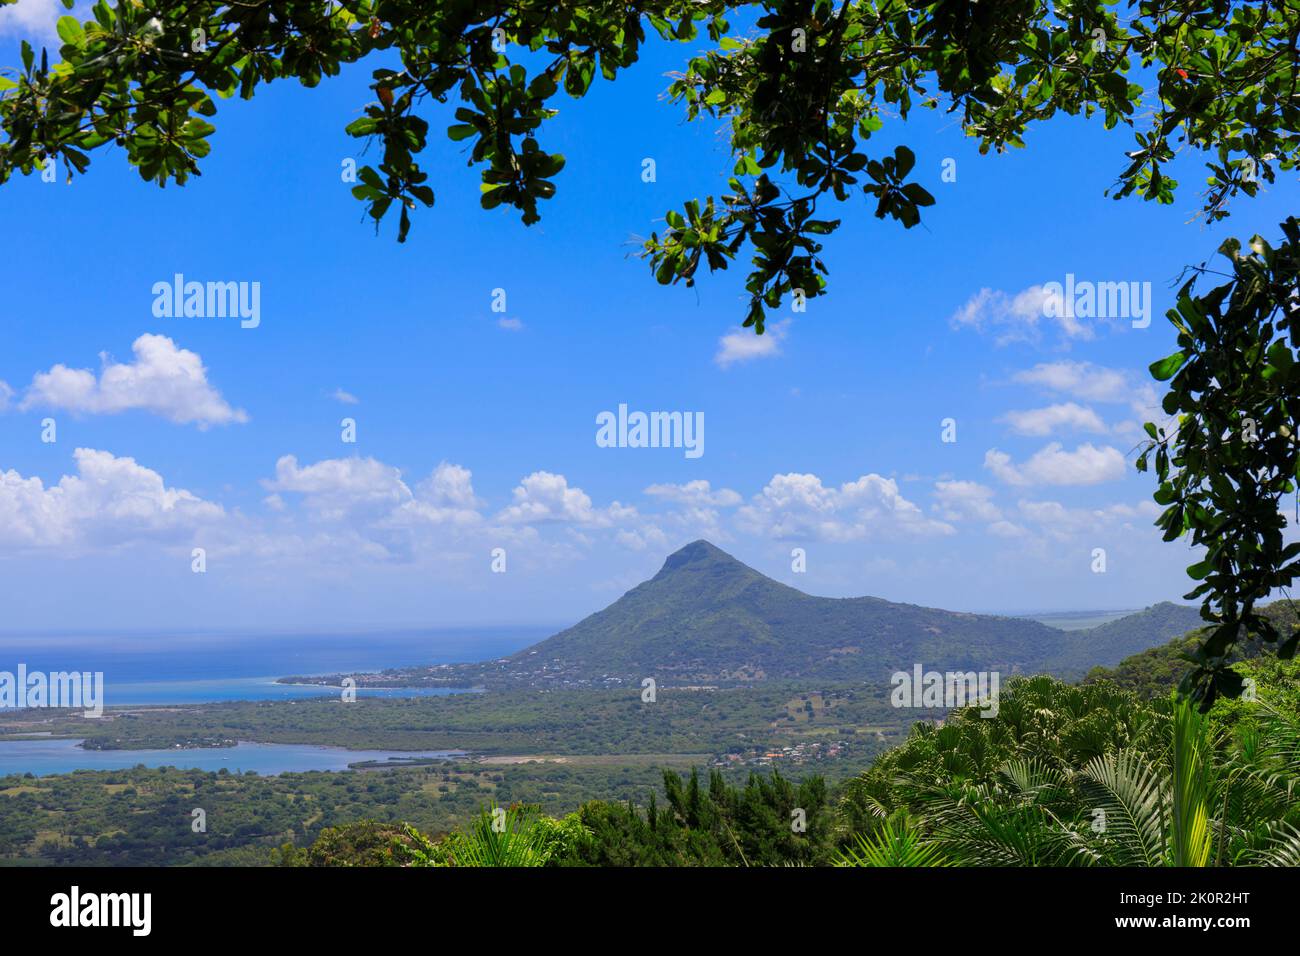 Mauritius. View to coast and the mountain of Tourelle du Tamarin. Stock Photo